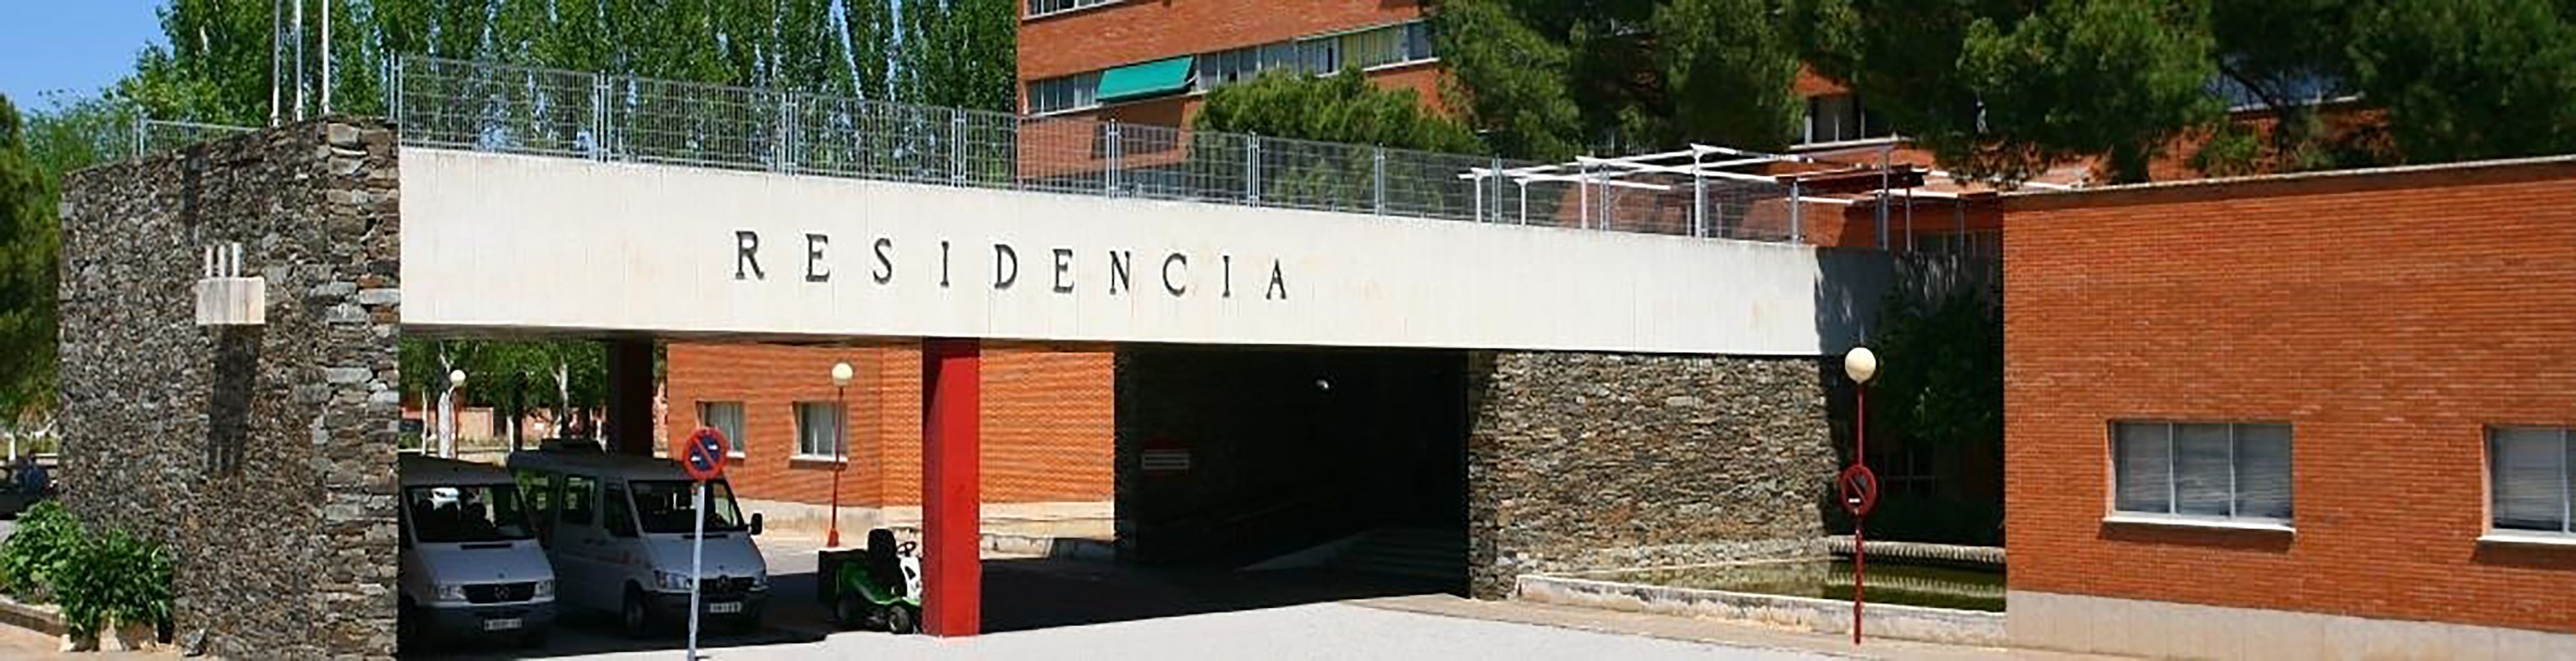 El alcalde de Alcalá de Henares denuncia la situación en una residencia: "Están pasando hambre"